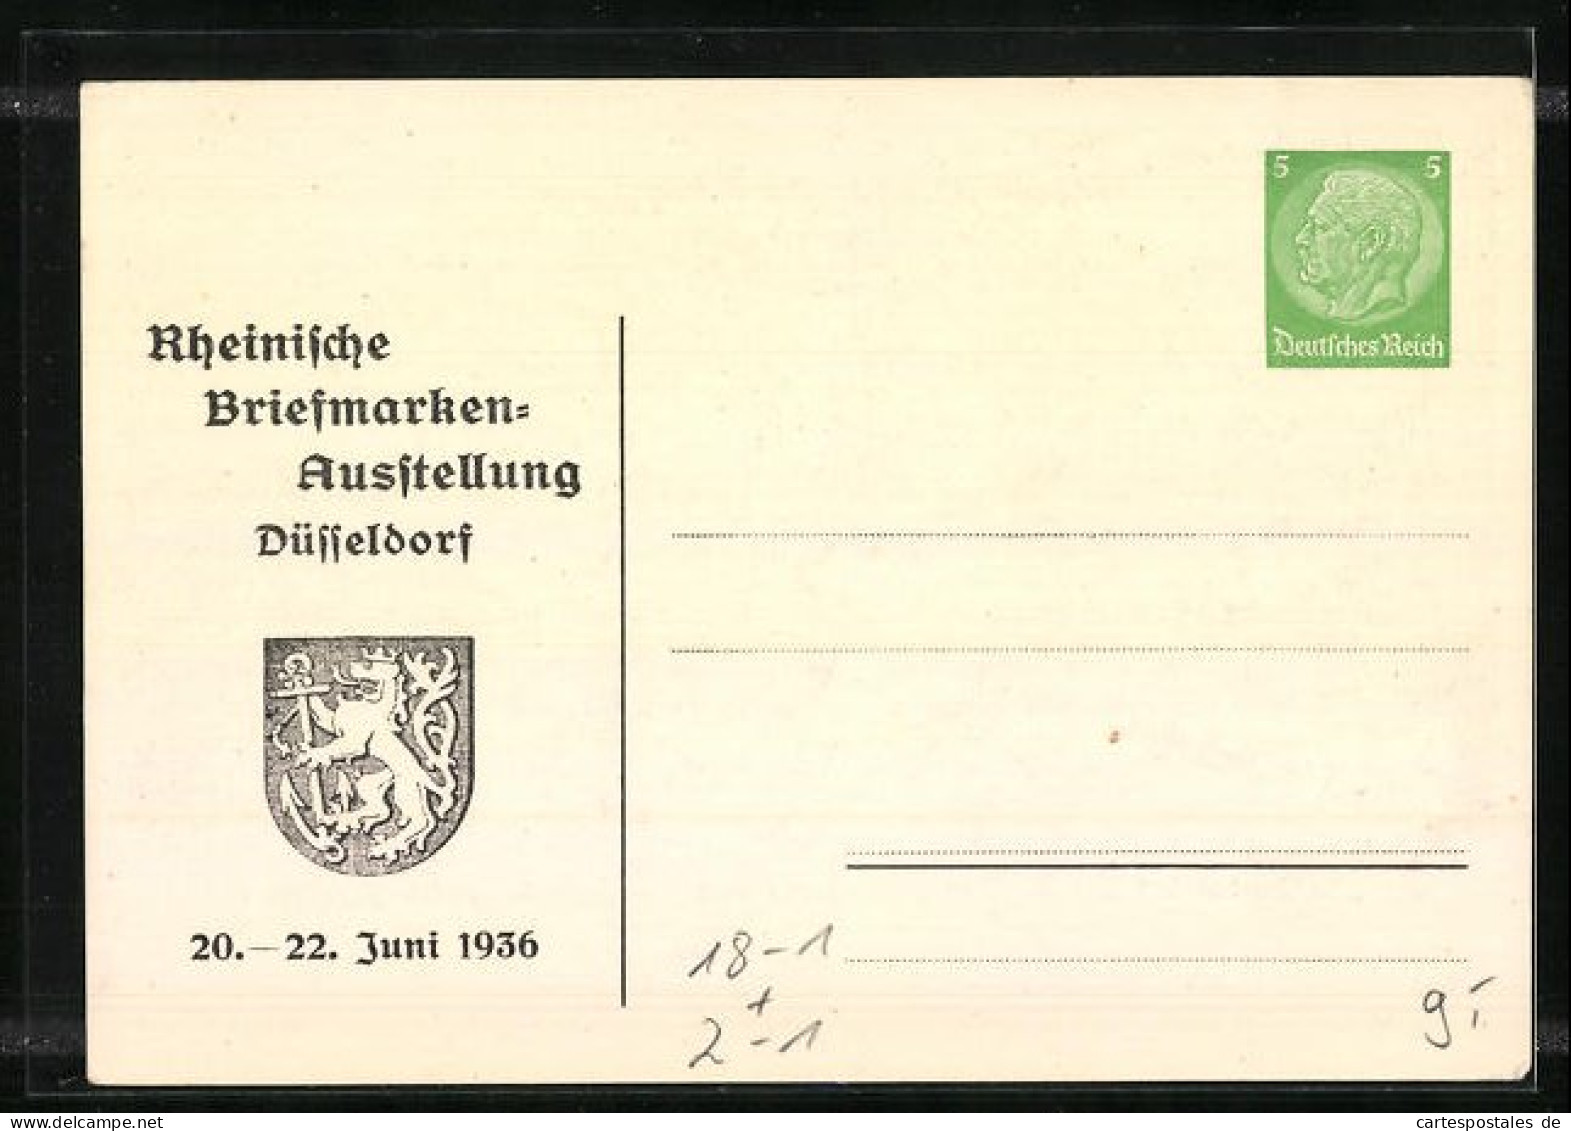 Künstler-AK Düsseldorf, Rheinische Briefmarken-Ausstellung 1936, Die Schirmherrin Trifft Ein, Ganzsache  - Briefmarken (Abbildungen)